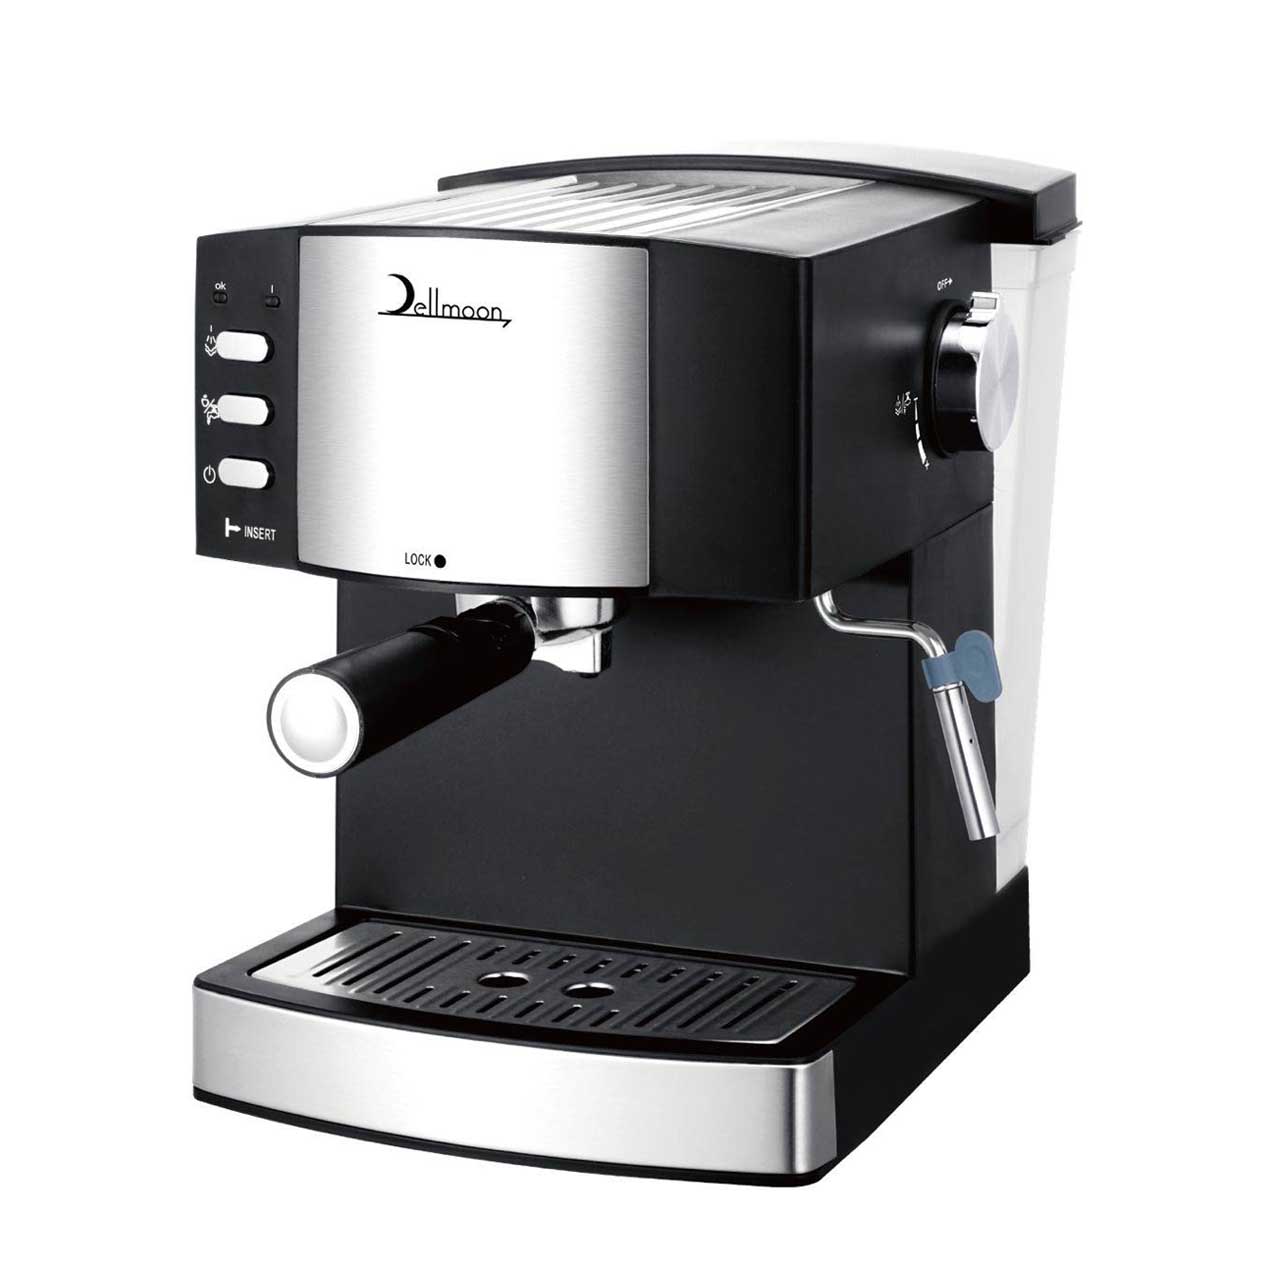 قهوه ساز Dellmoon مدل 6886